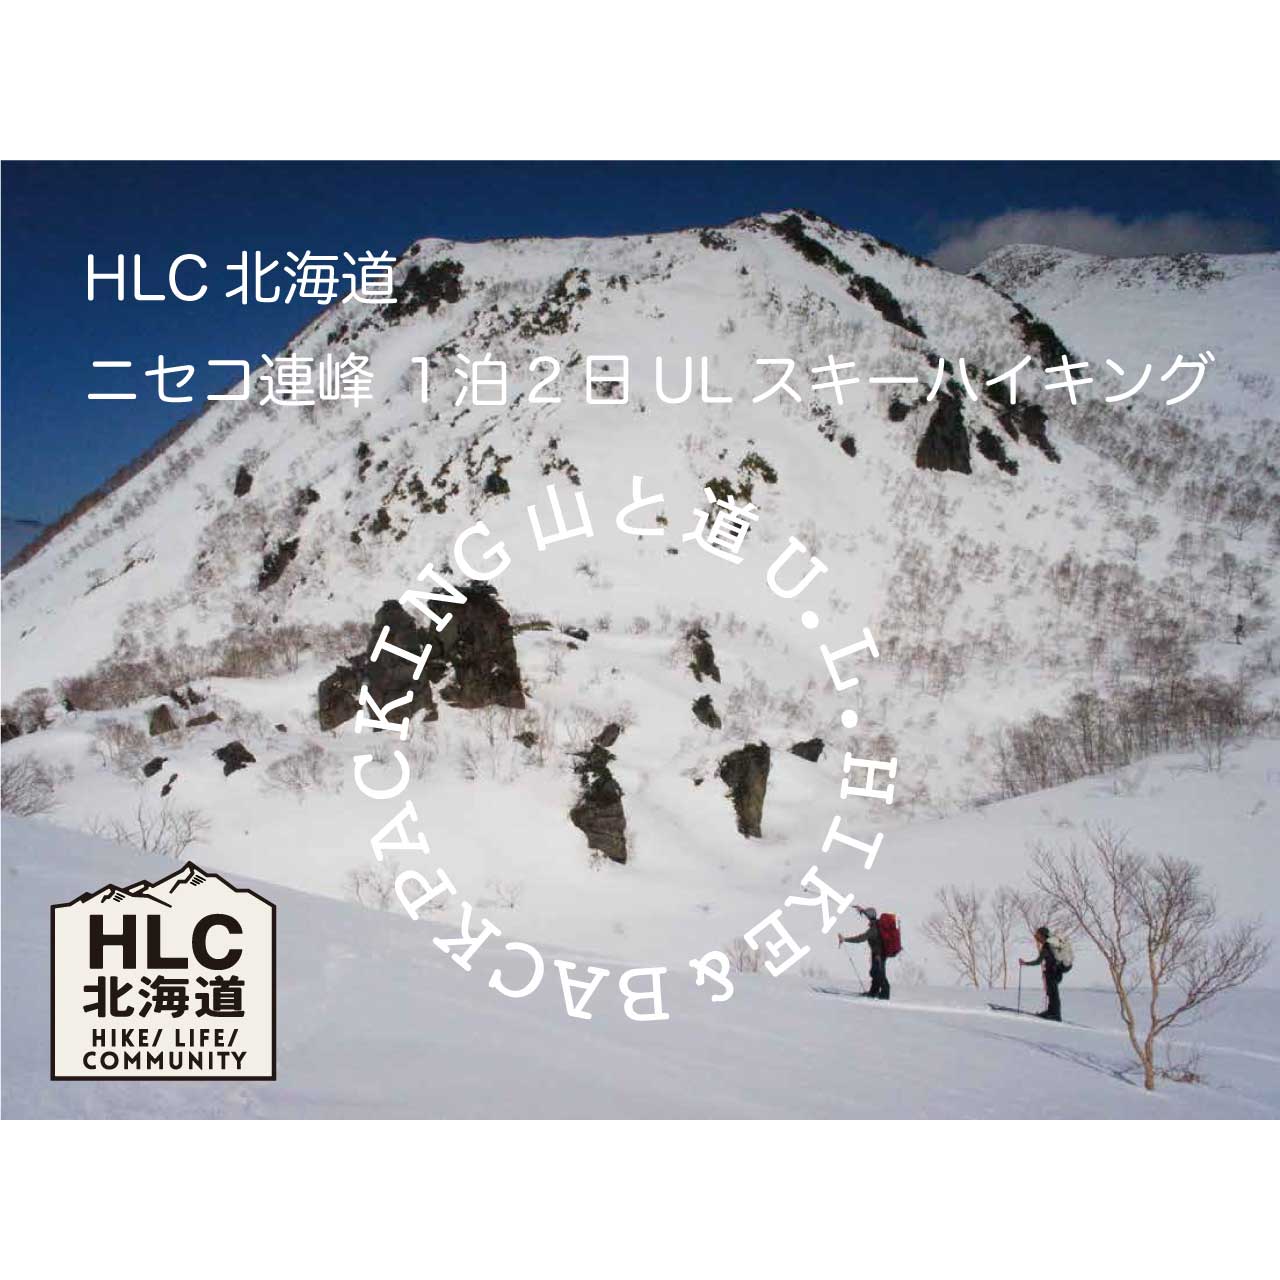 開催日 3月13 14日hlc北海道 ニセコ連峰1泊2日ulスキーハイキング Camp Go